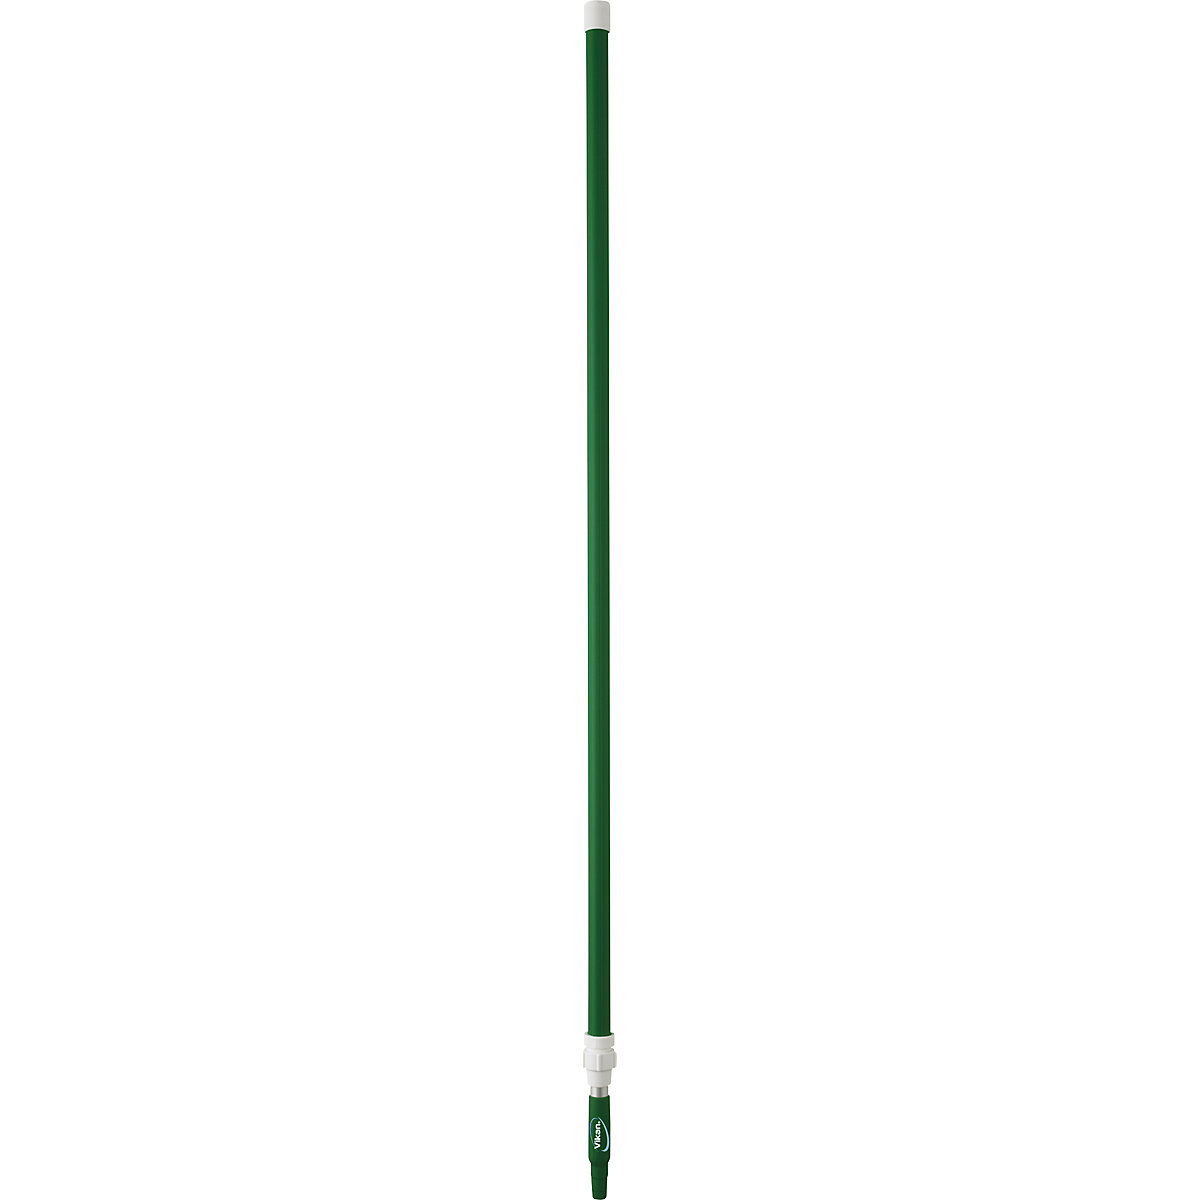 Teleskopska drška, ergonomična – Vikan, Ø 32 mm, dužina 1575 mm – 2780 mm, pak. 5 kom., u zelenoj boji